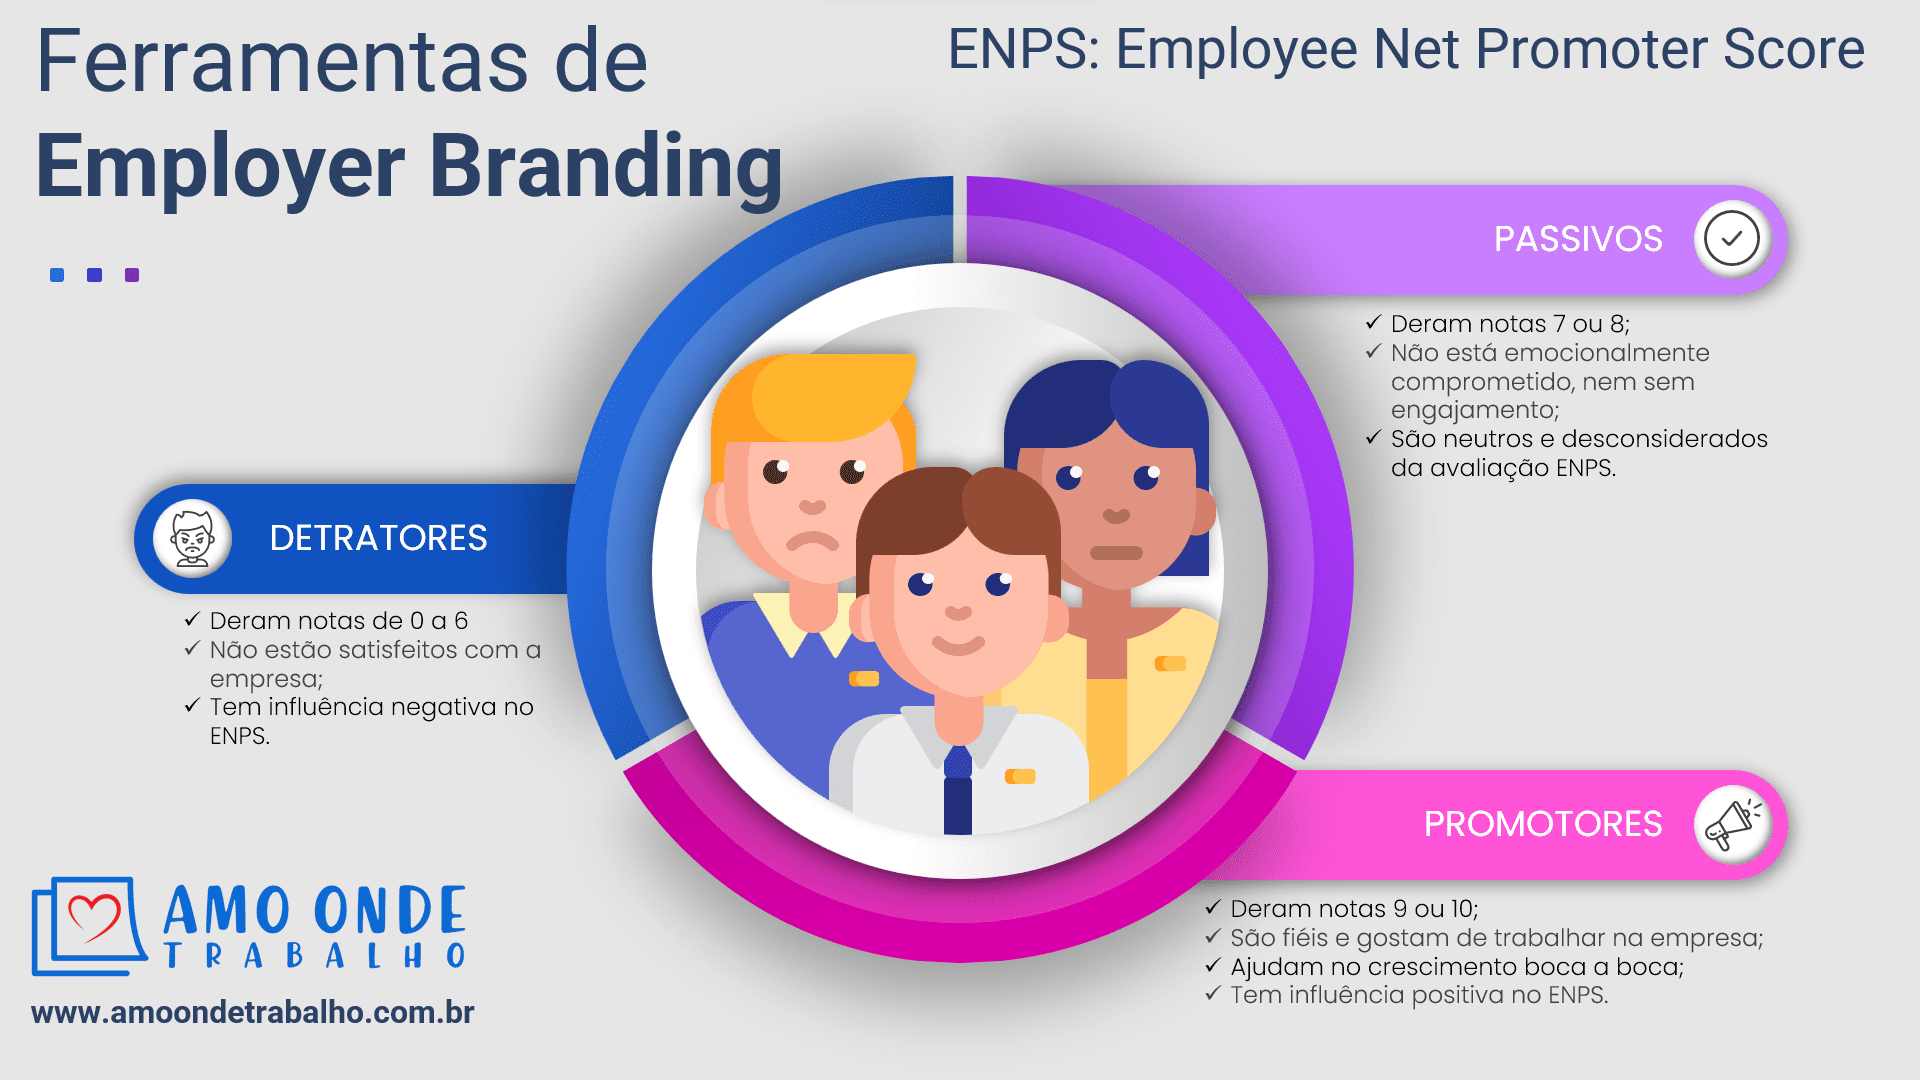 Employer Branding: ENPS